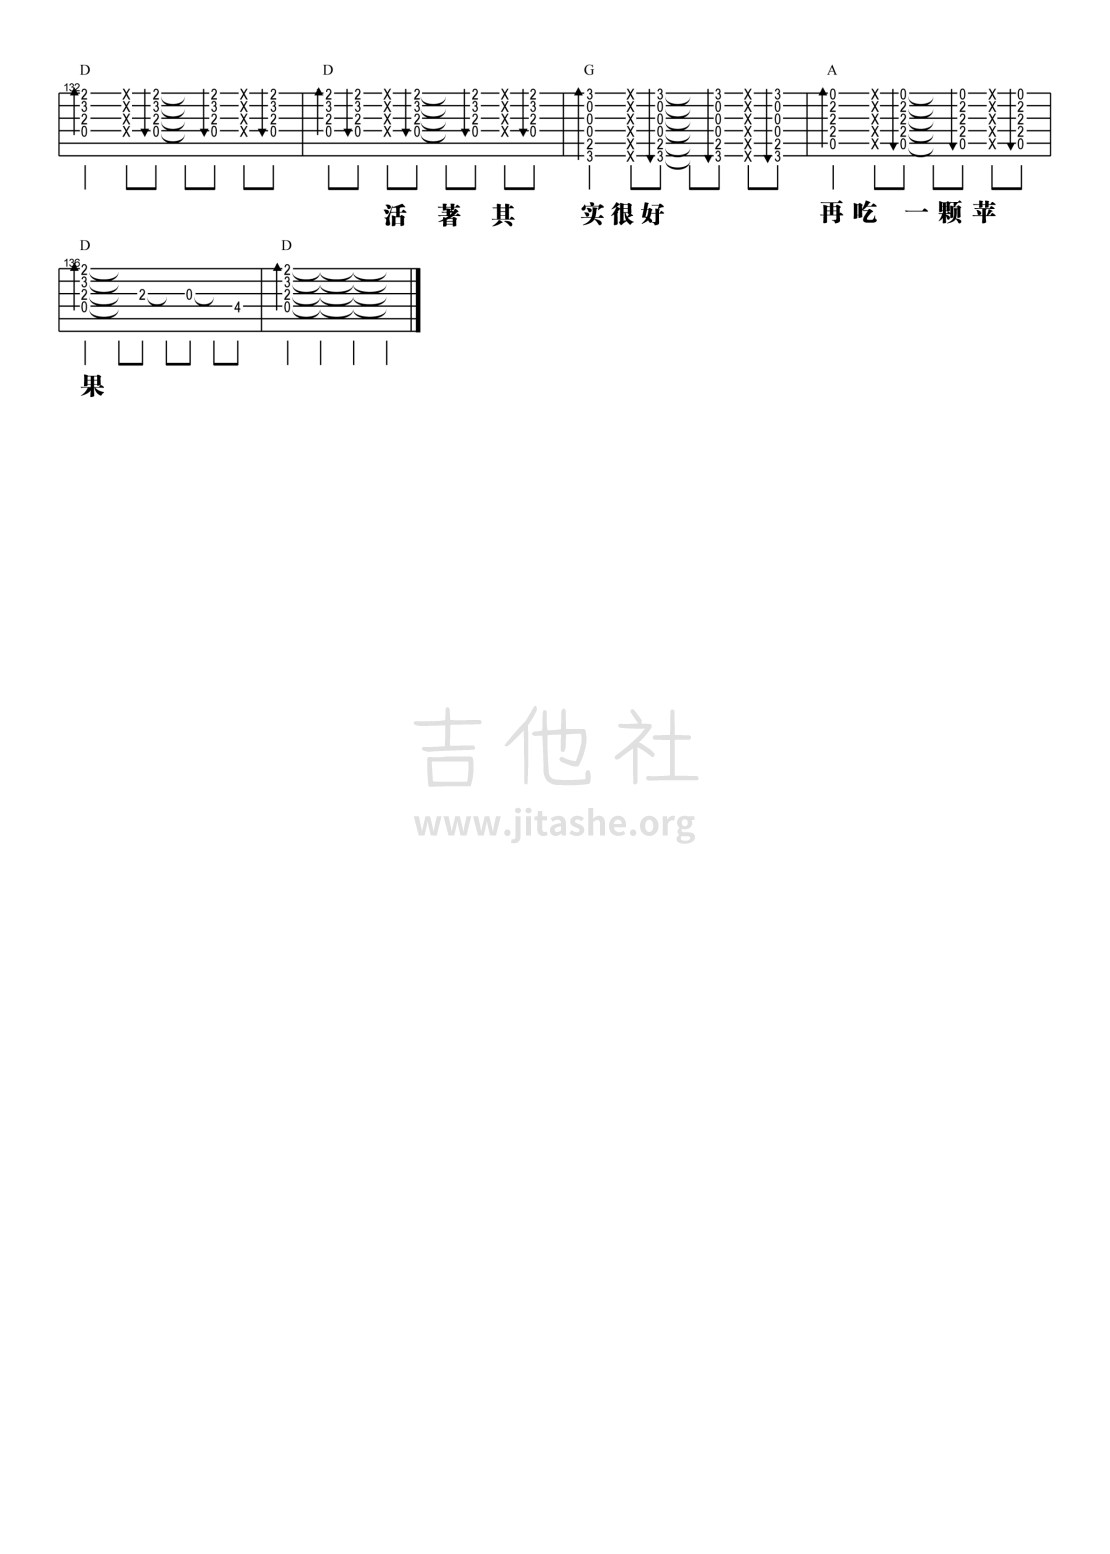 【阿信乐器】#23 五月天《一颗苹果》吉他教学吉他谱(图片谱,弹唱,教学)_五月天(Mayday)_5.jpg